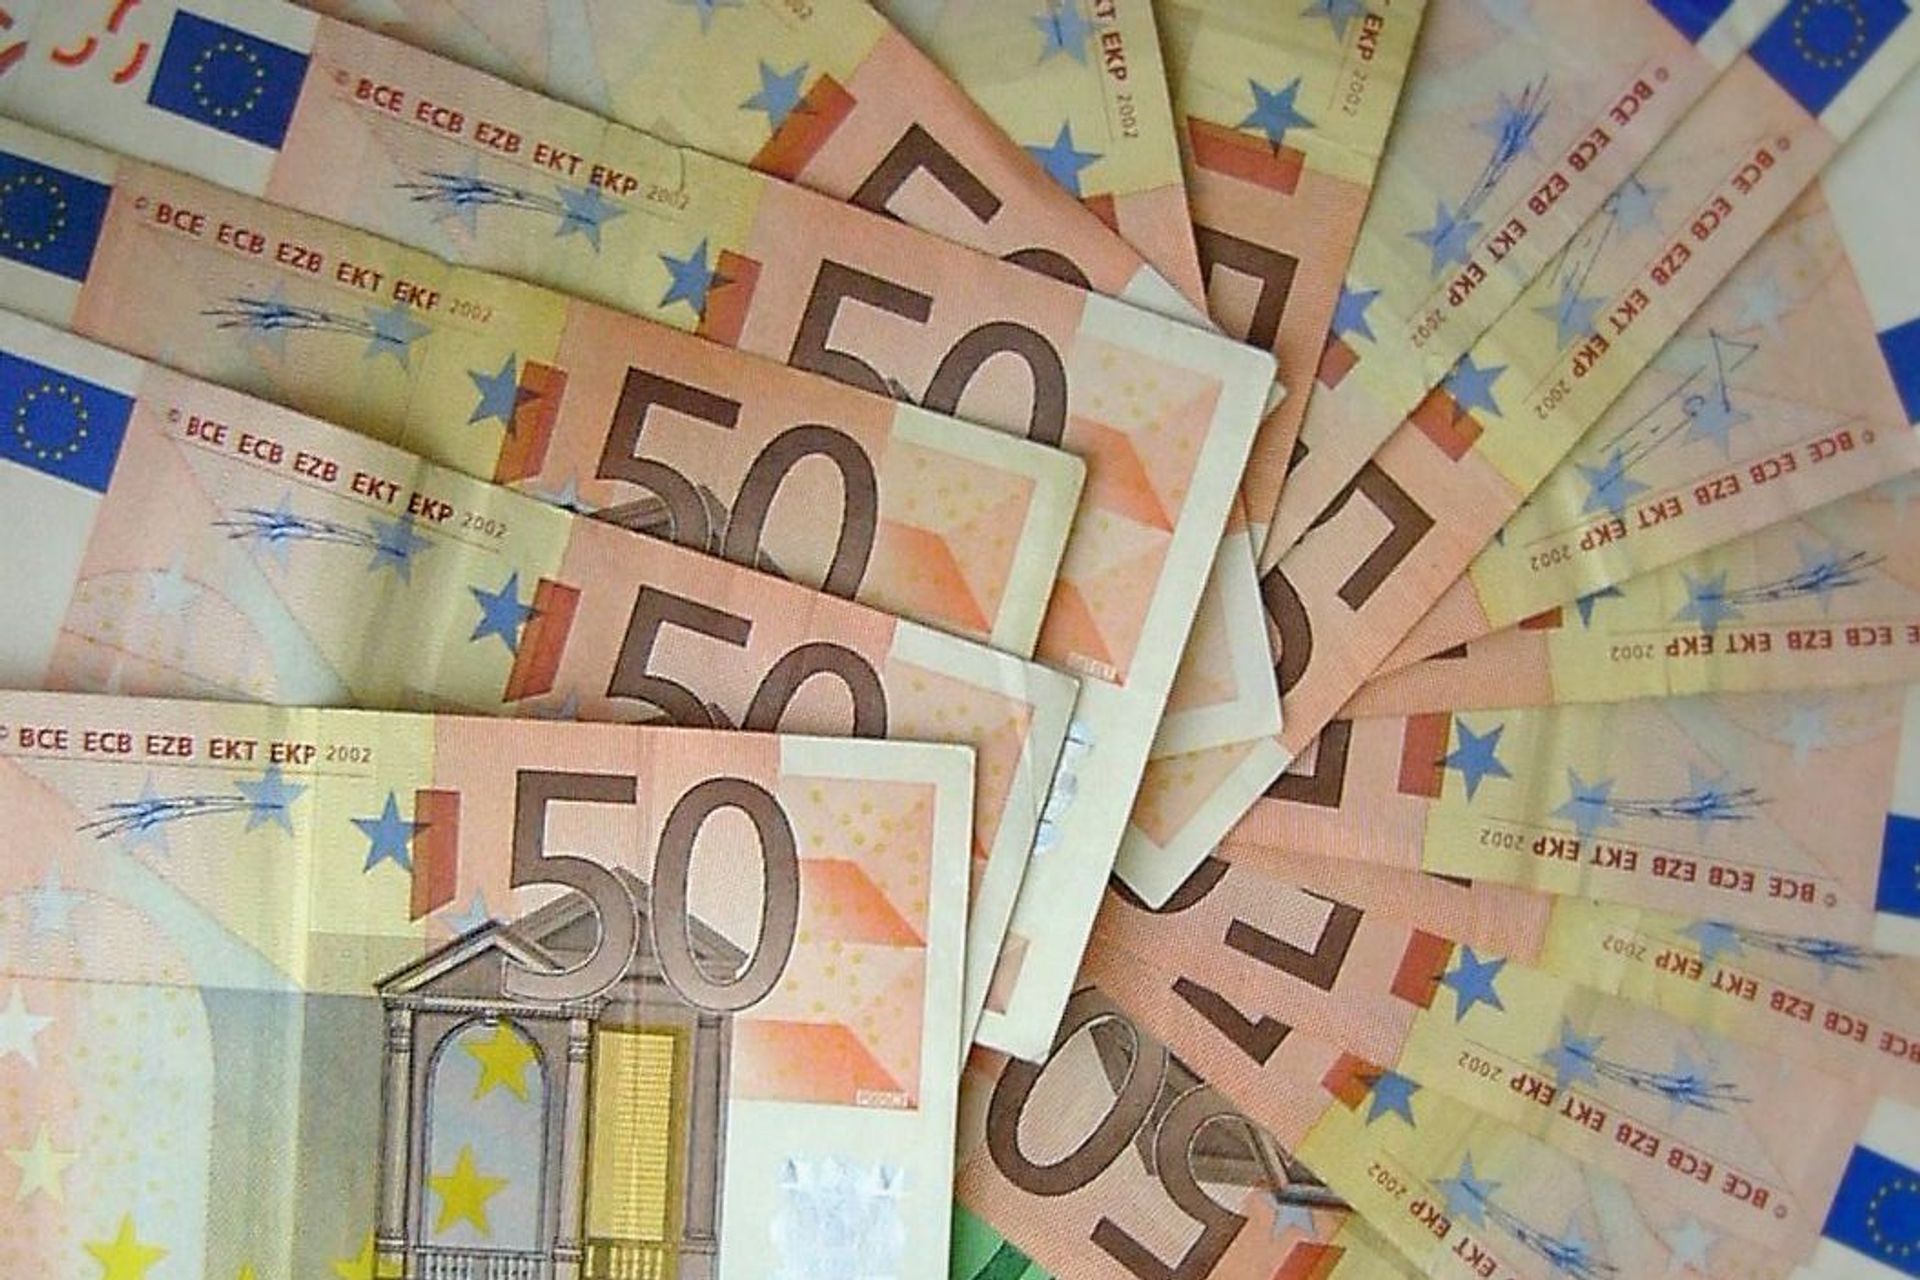 Եվրոպական կենտրոնական բանկի կողմից թողարկված 50 եվրո արժողությամբ թղթադրամներ այսպես կոչված երկրների համար